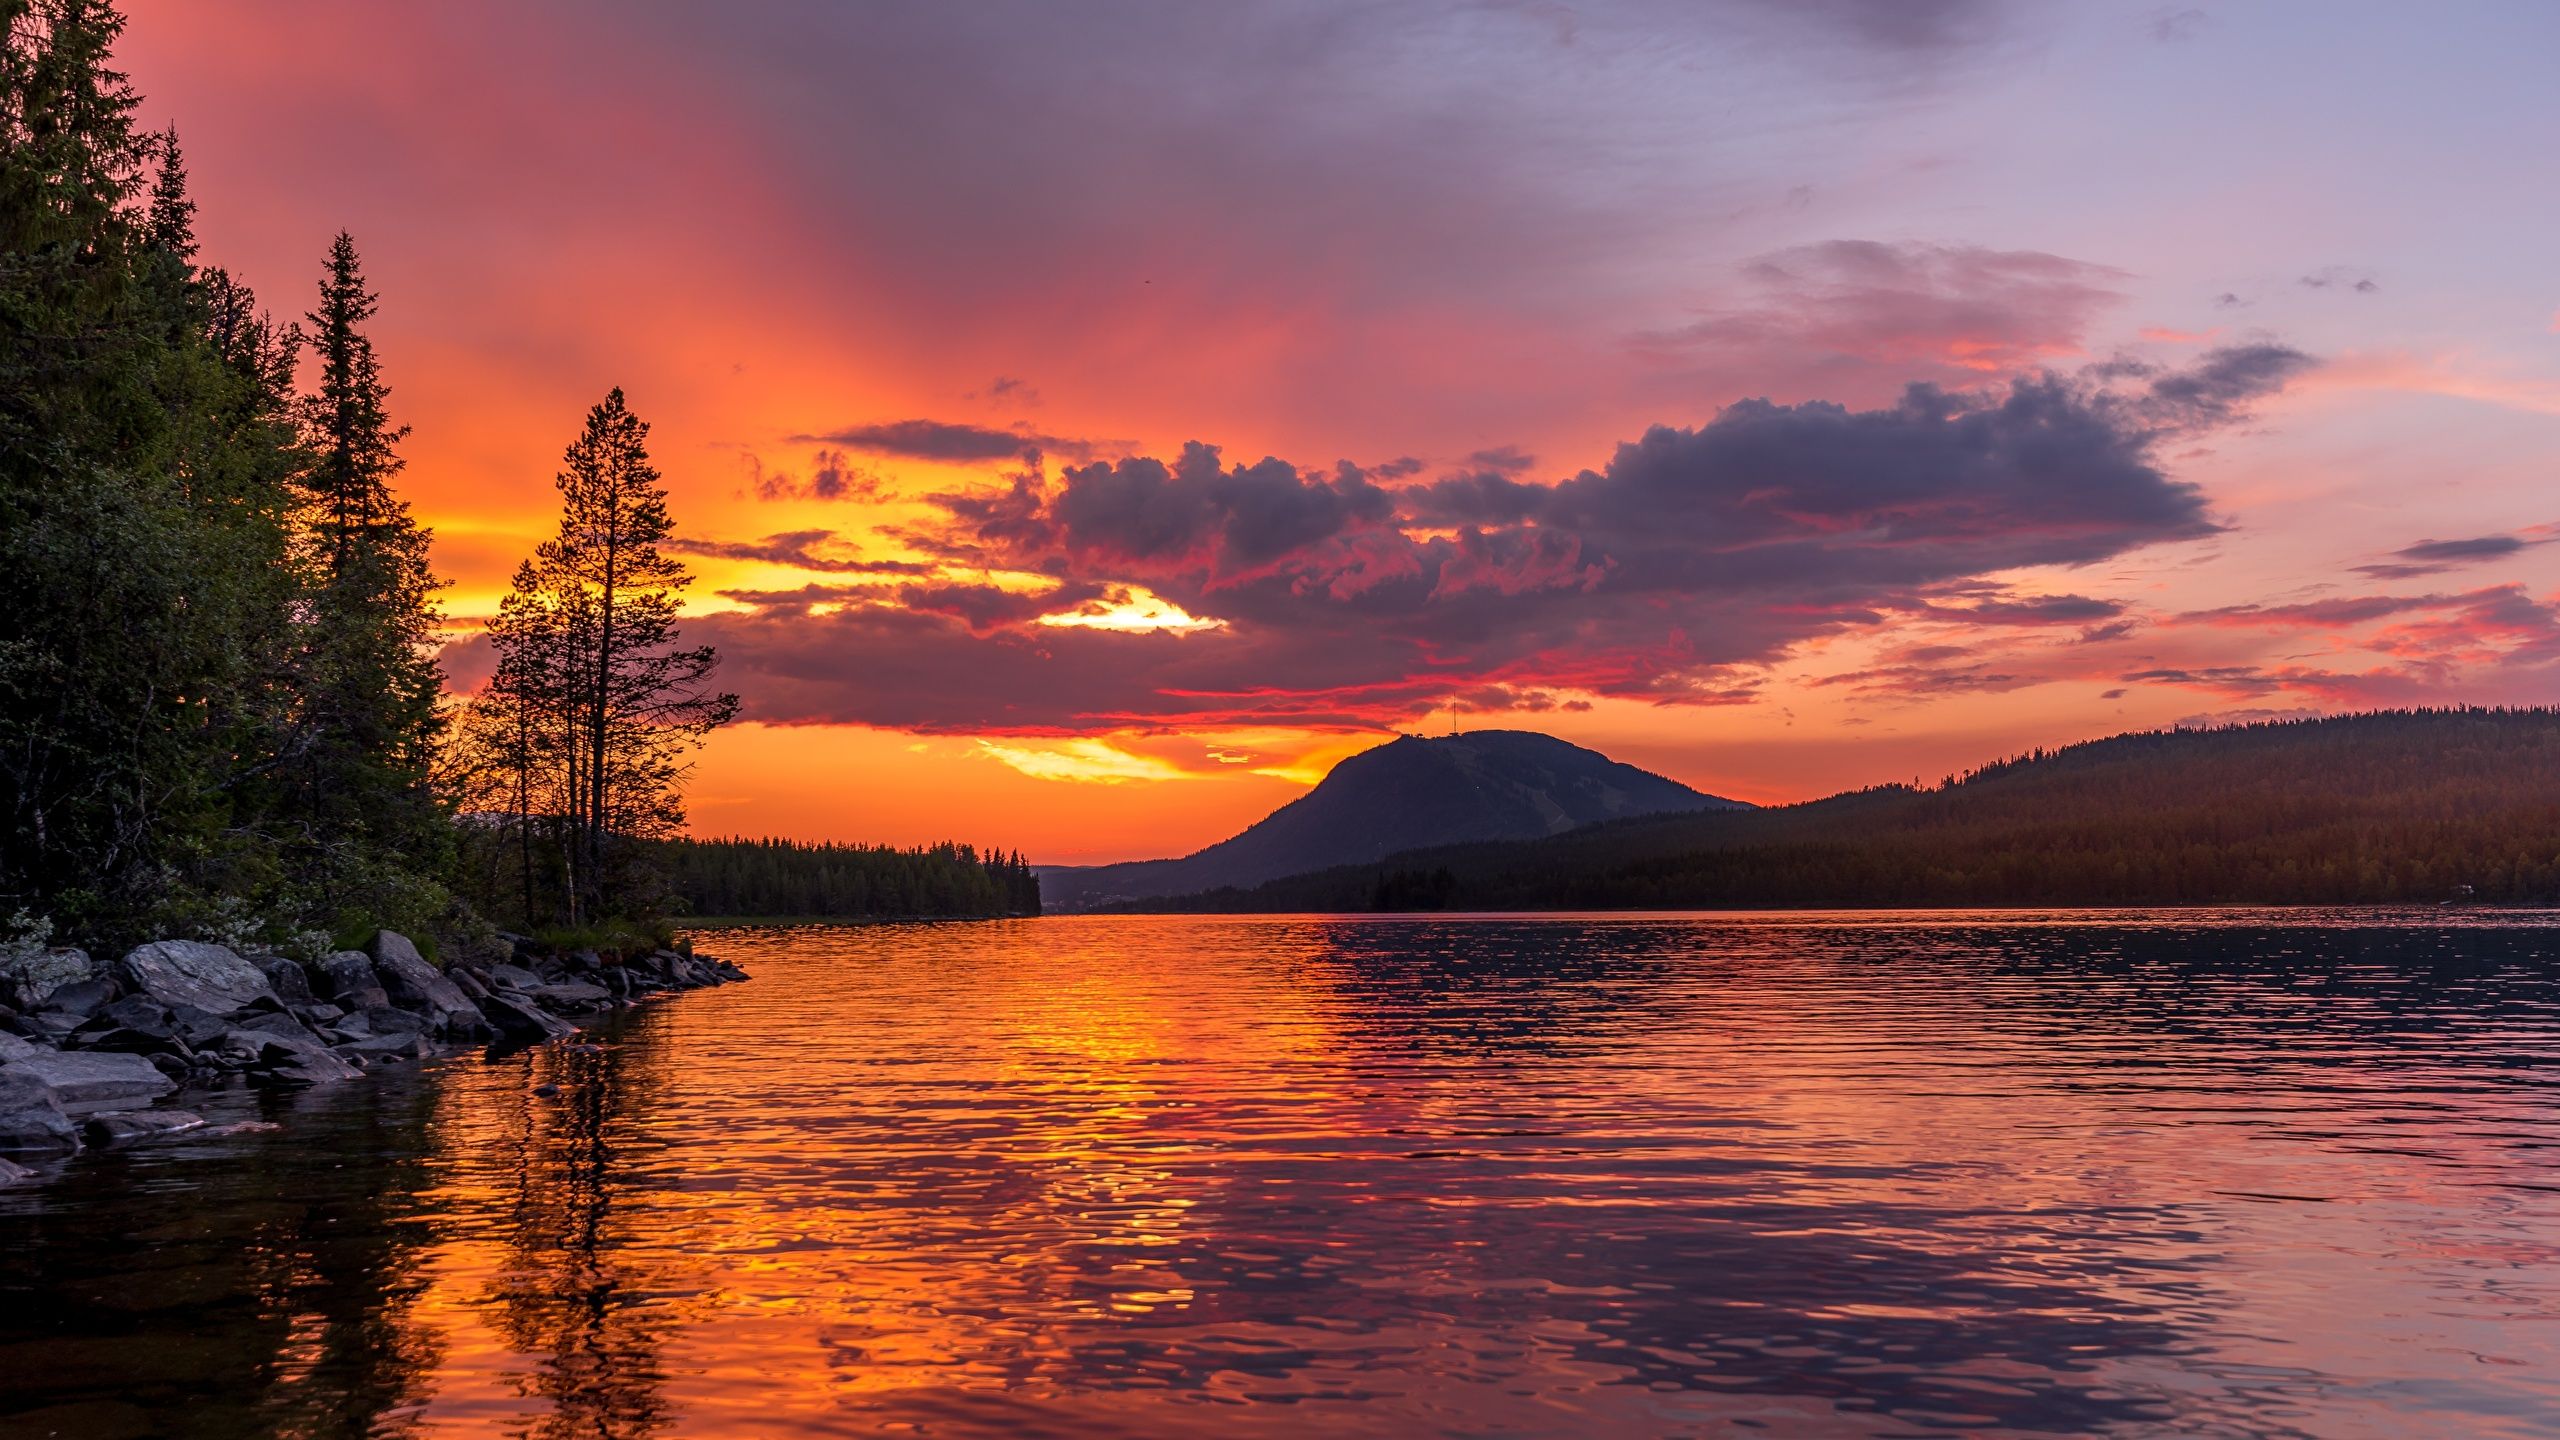 Image Mountains Lake Sunrises and sunsets landscape 2560x1440